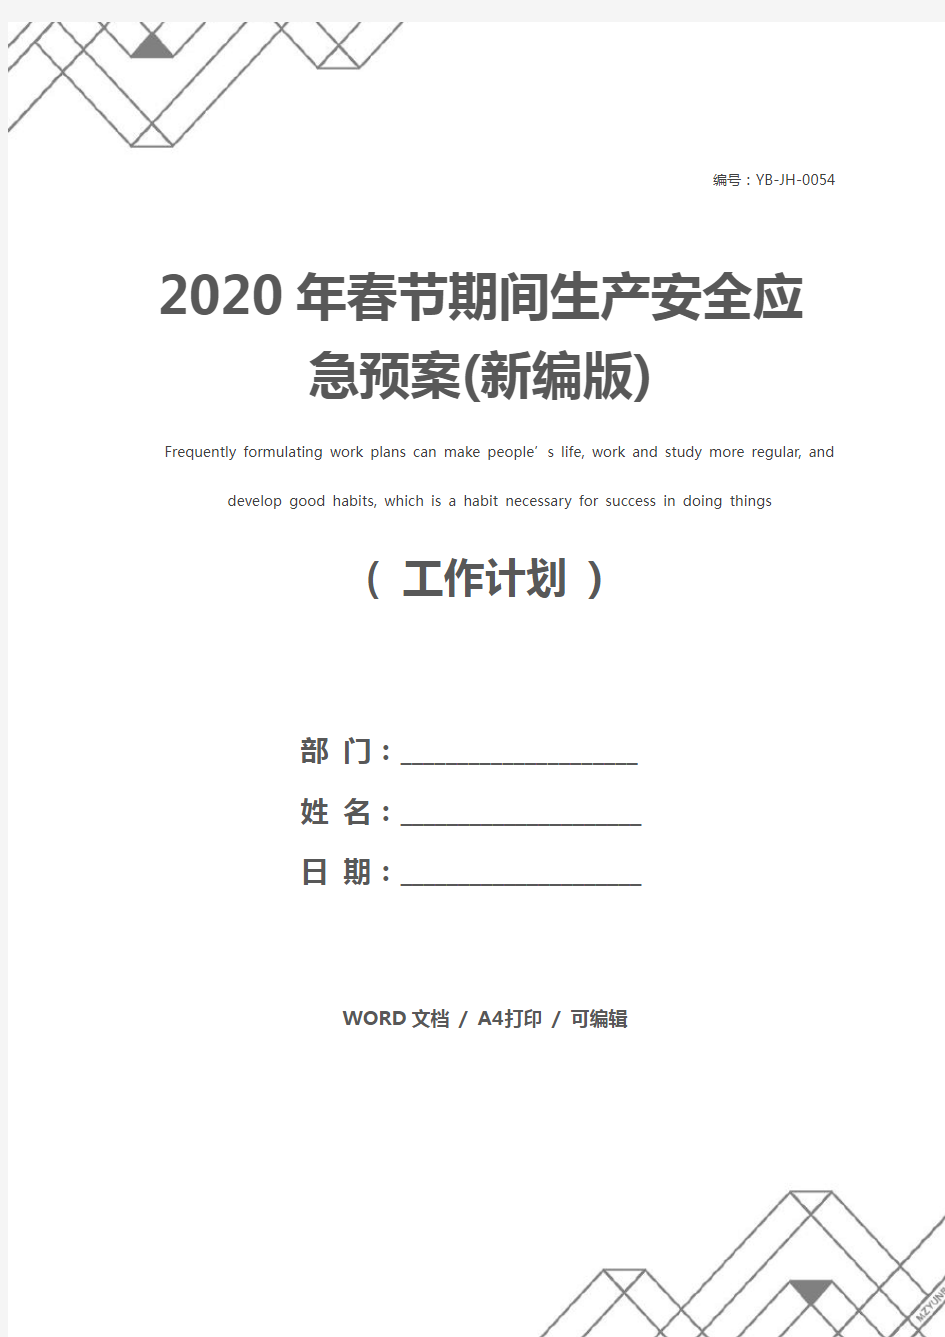 2020年春节期间生产安全应急预案(新编版)